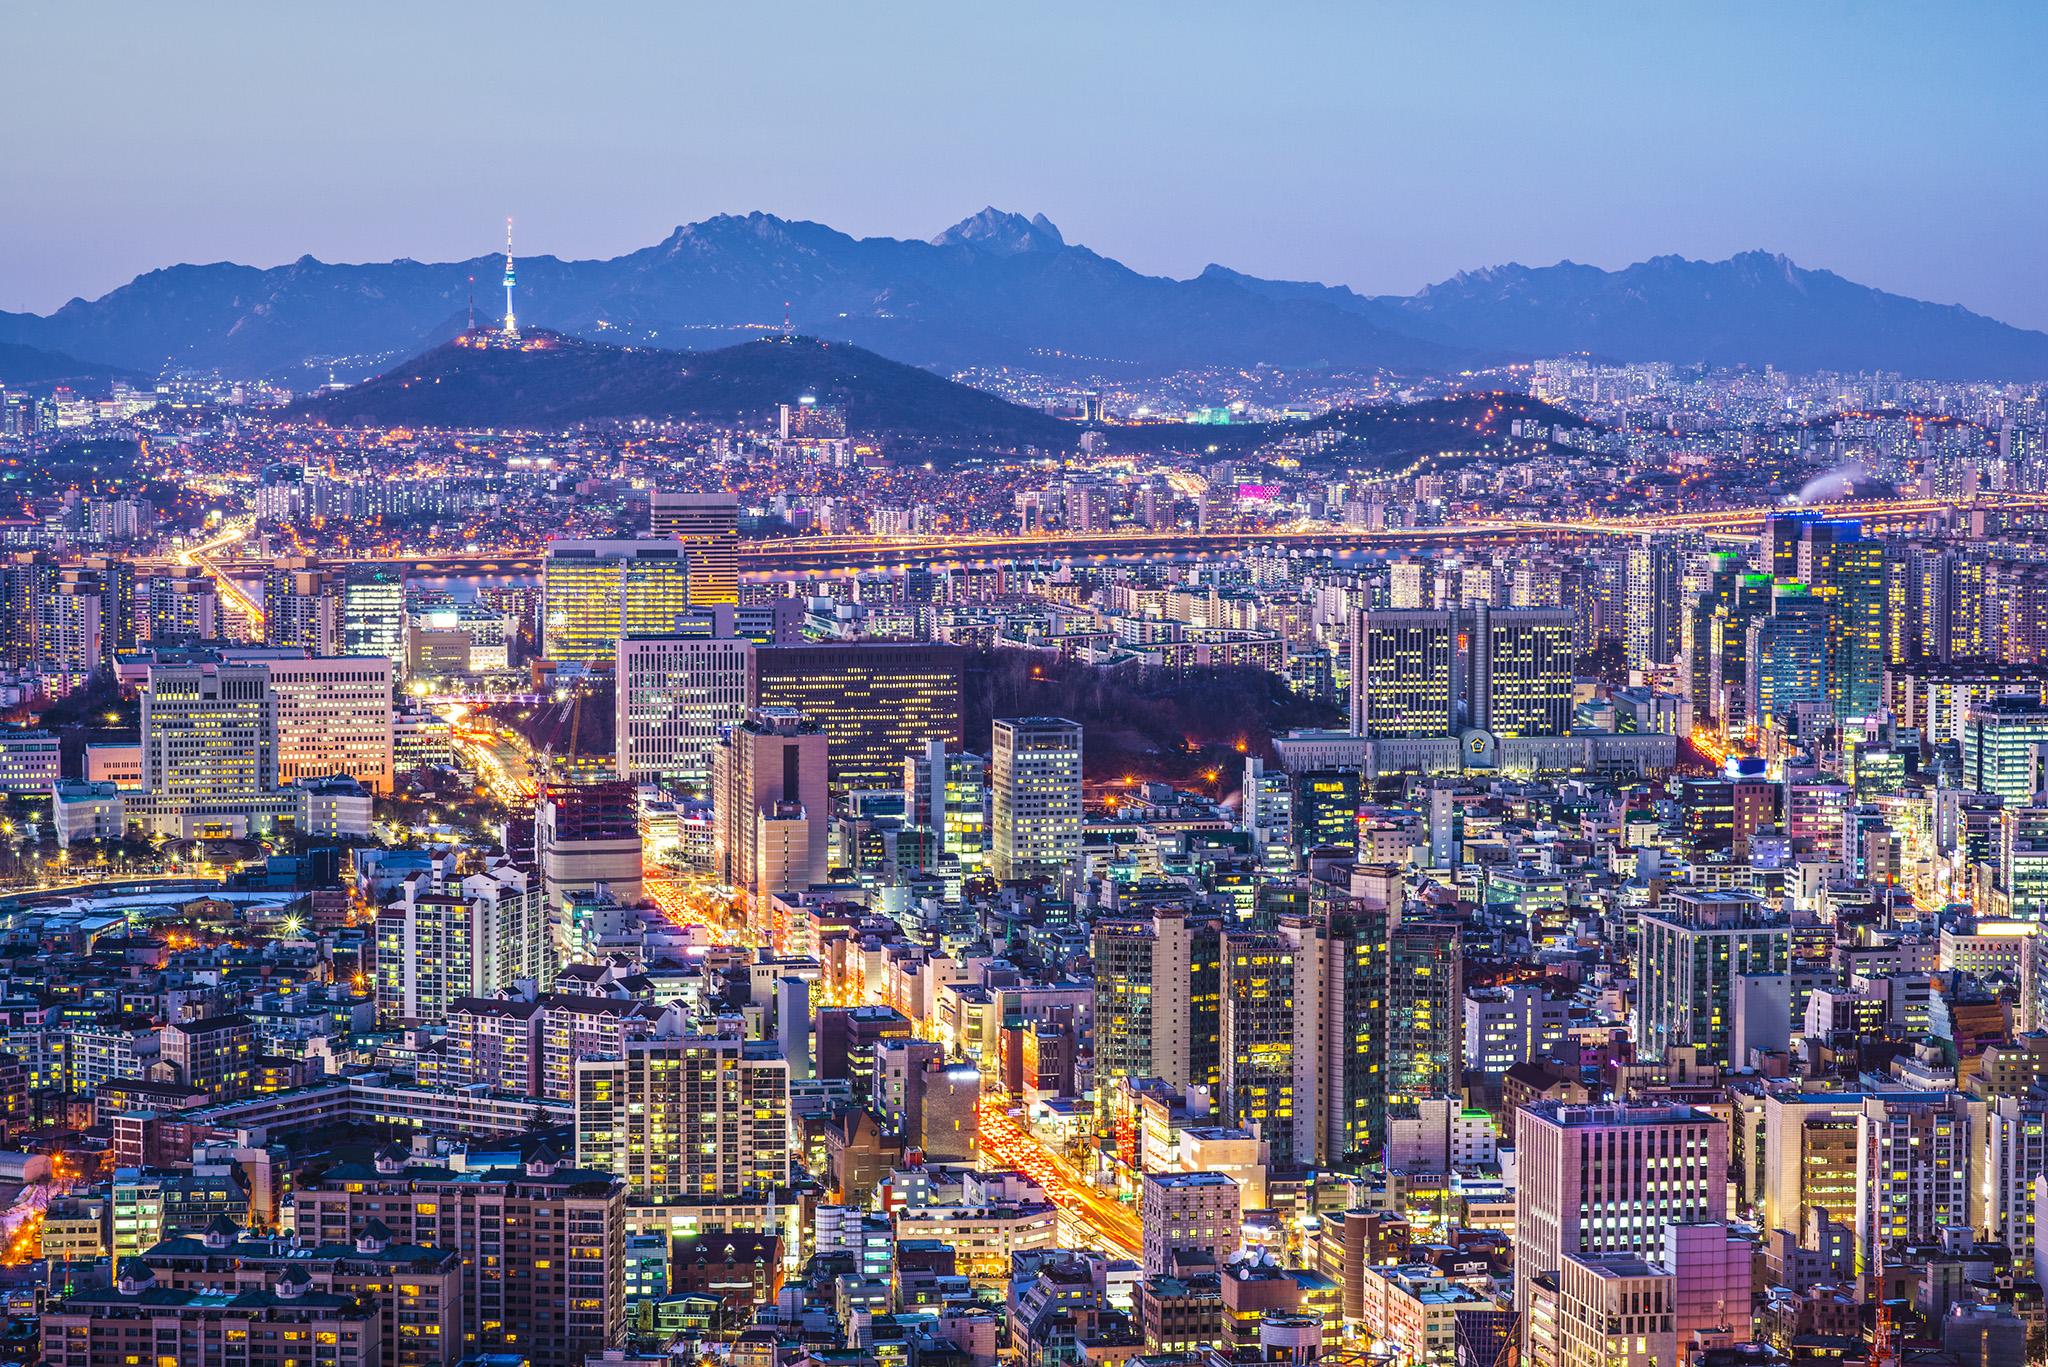 7. Seoul